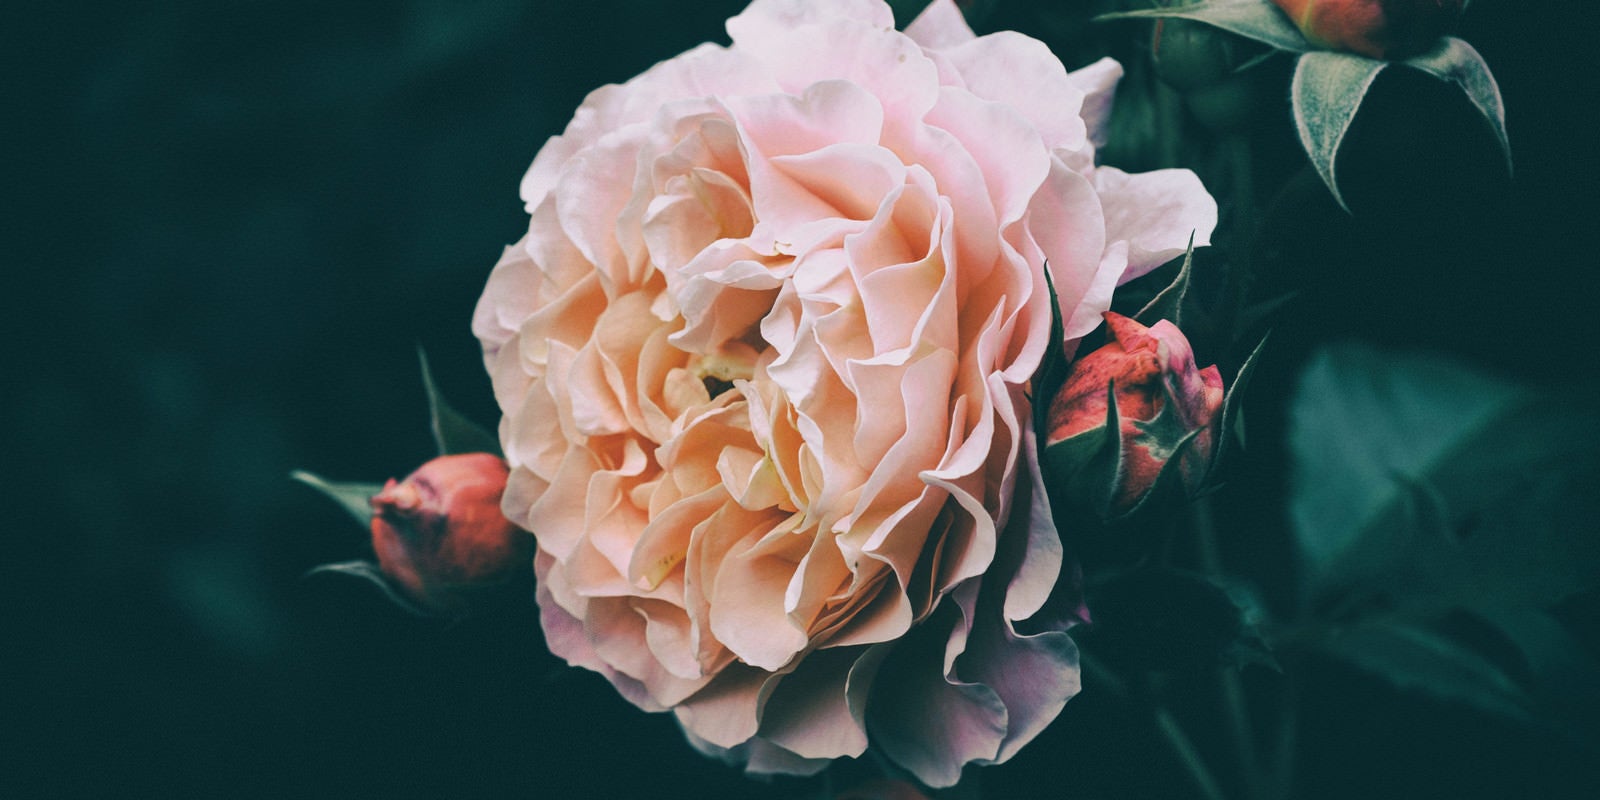 「開花する薔薇とつぼみ」の写真